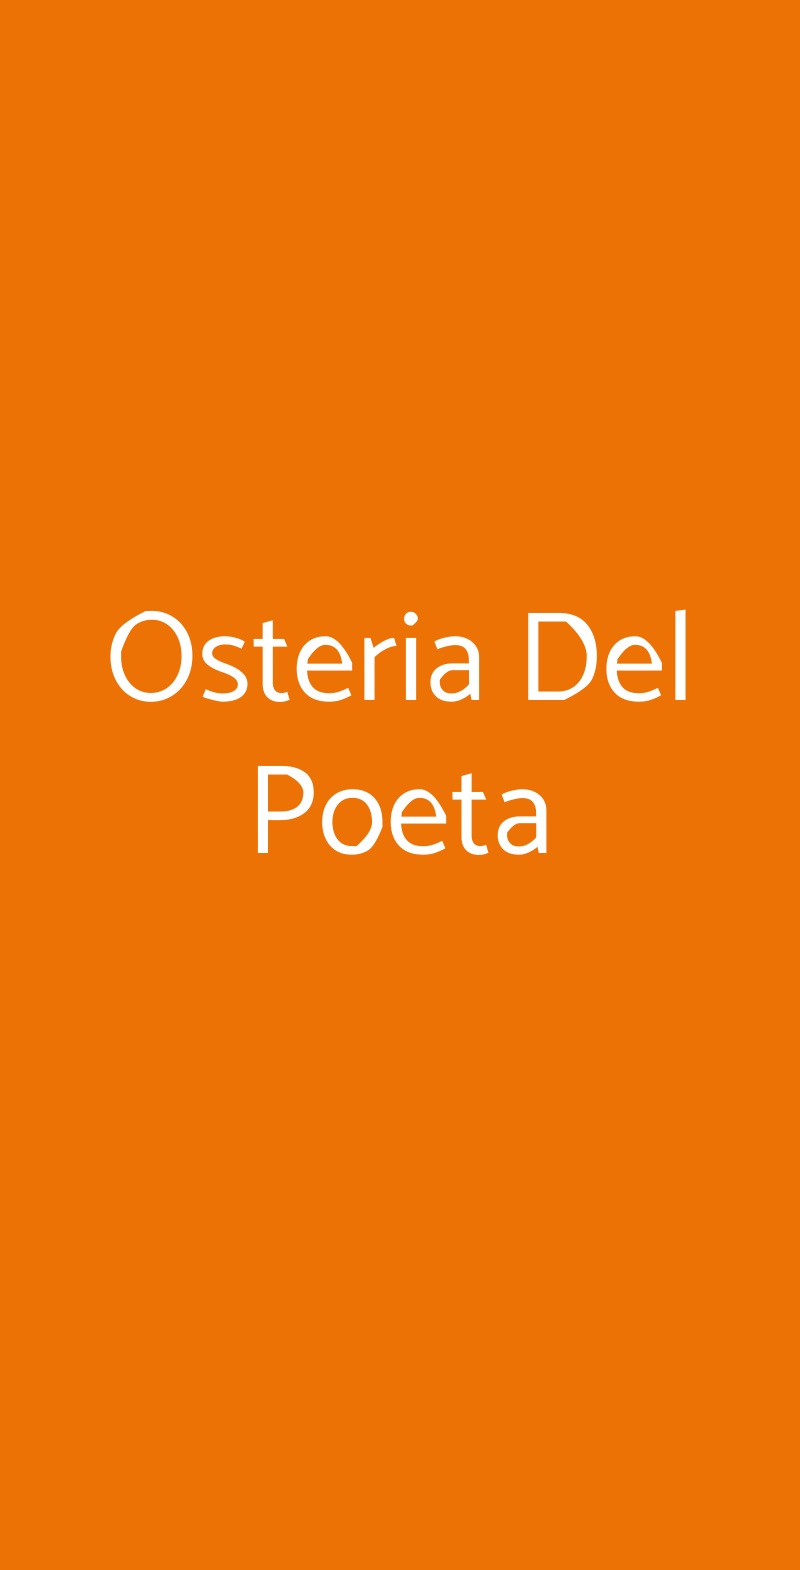 Osteria Del Poeta Alberobello menù 1 pagina